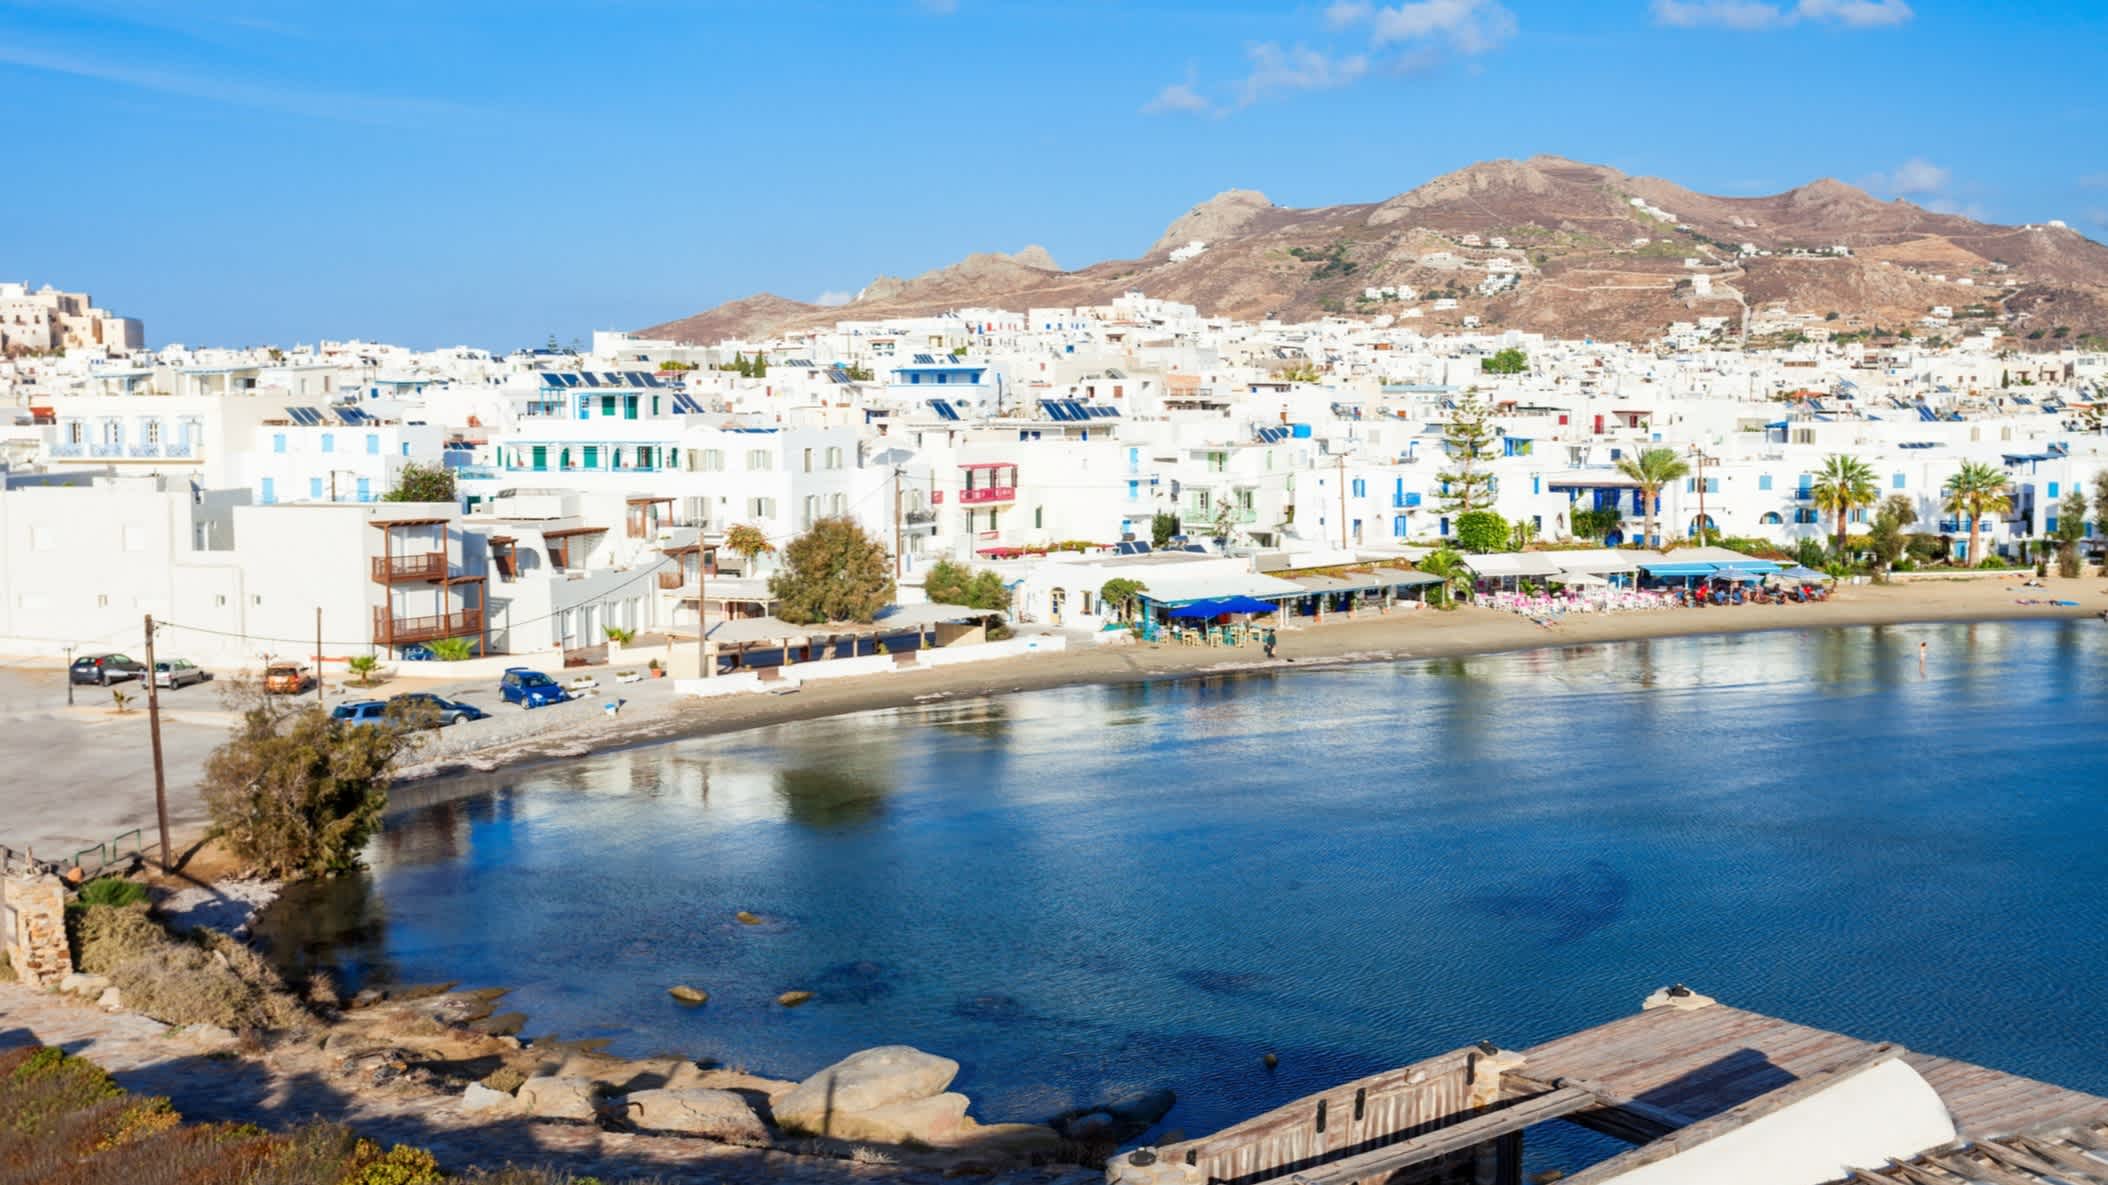 Blick auf den Strand Agios Georgios auf Naxos, Griechenland, mit den typischen weißen Häuserfassaden im Hintergrund.